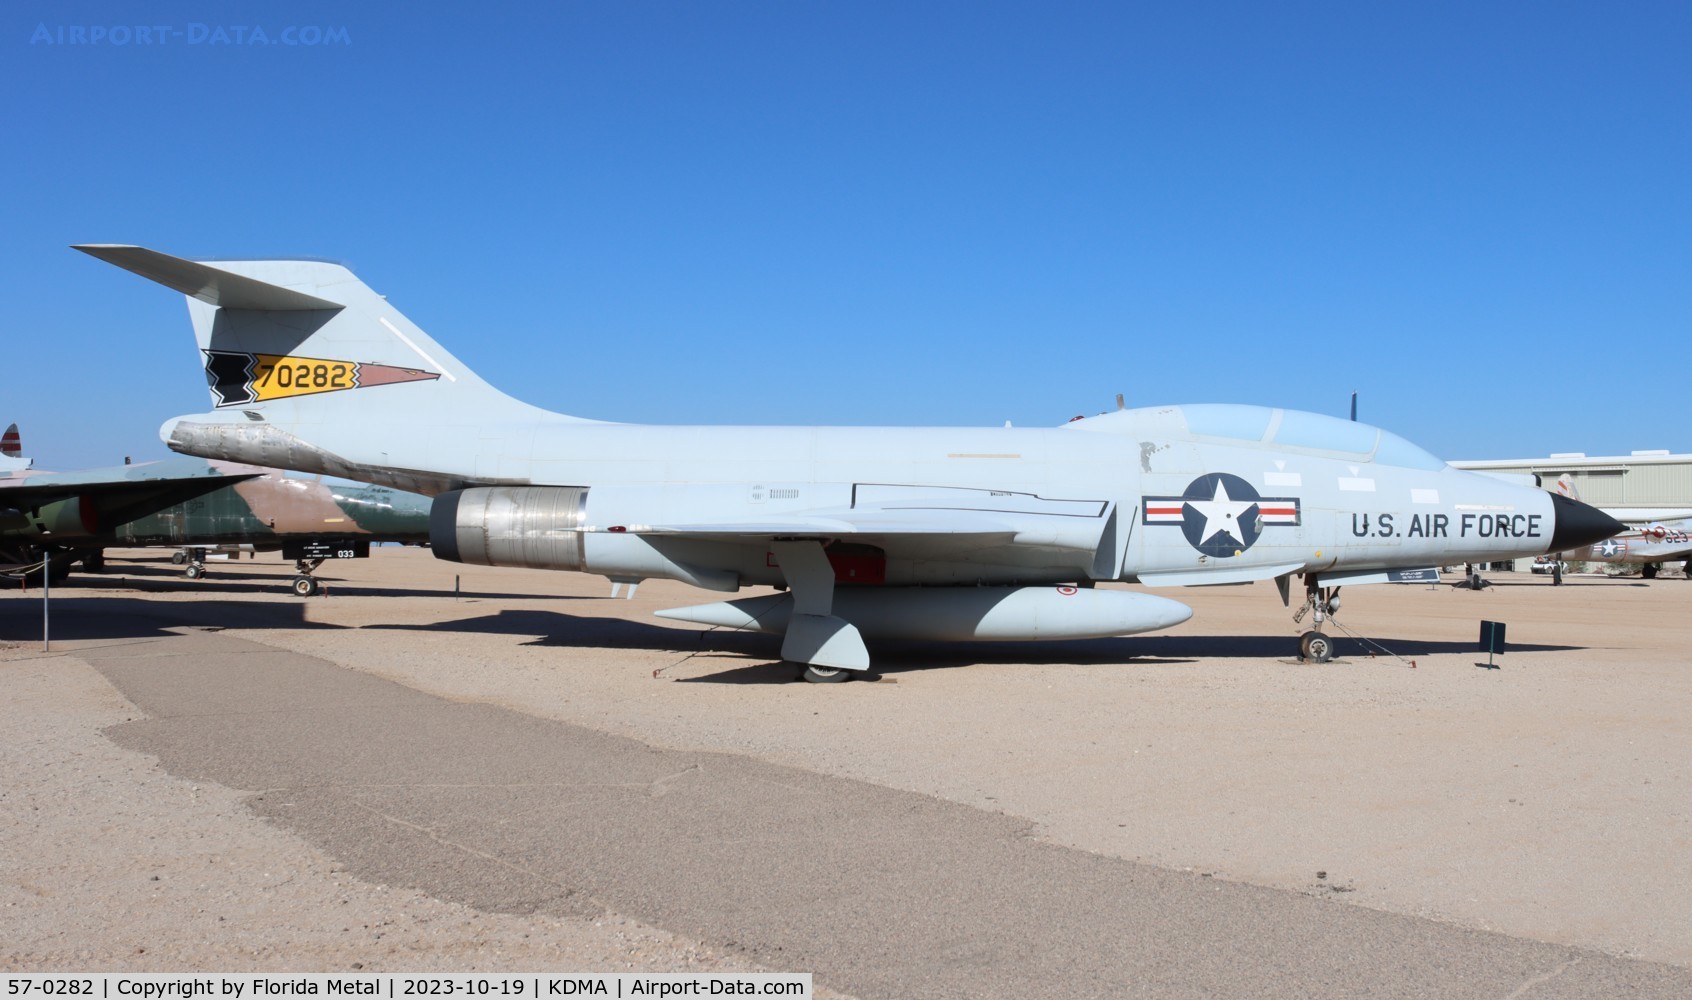 57-0282, 1957 McDonnell F-101B-85-MC Voodoo C/N 460, F-101 zx